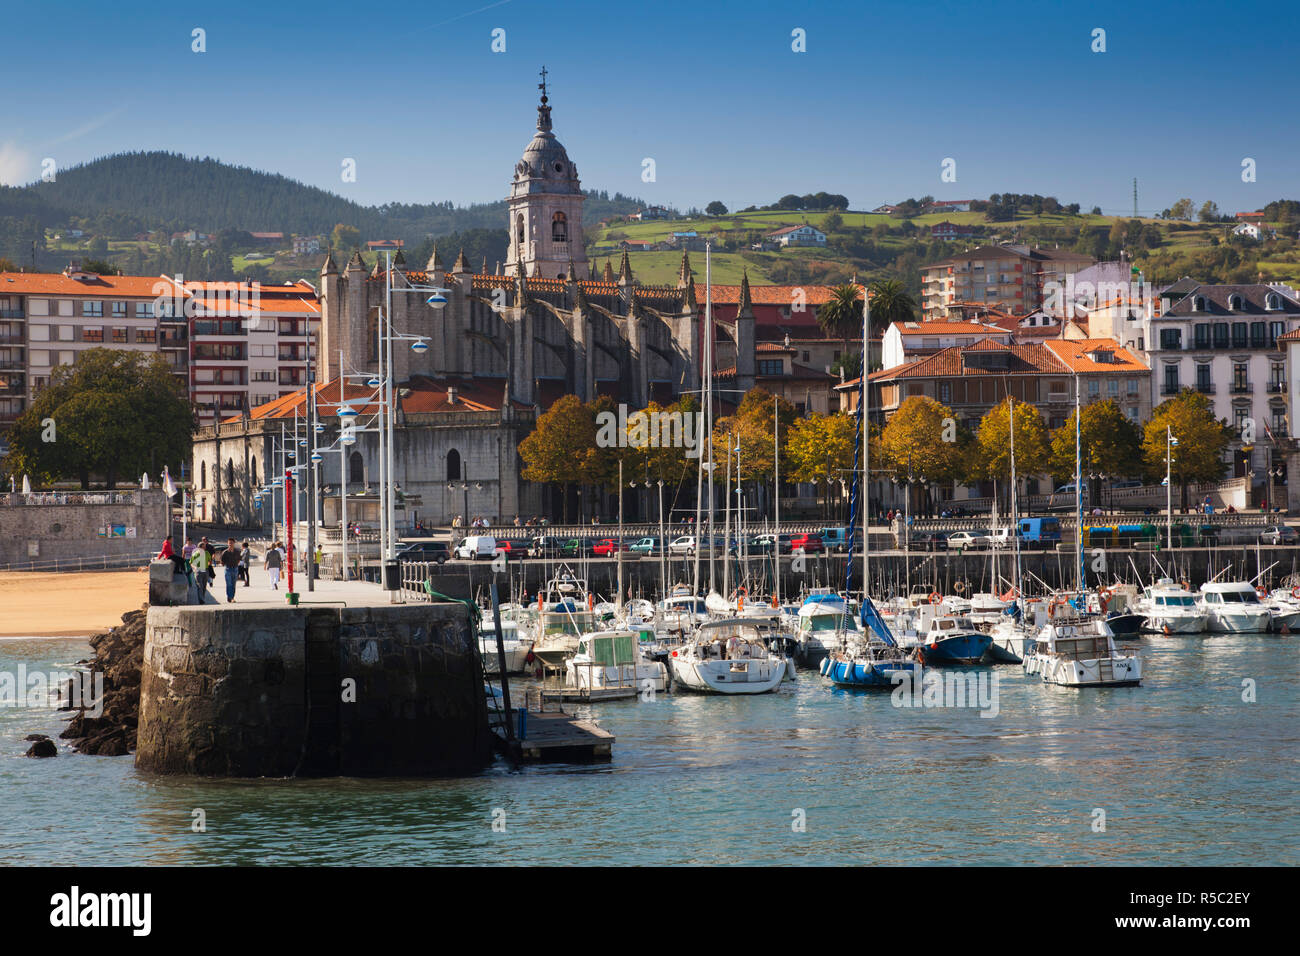 Espagne, Pays basque Région, province de Vizcaya, Lekeitio, vue sur la ville avec l'Eglise de Santa Maria de la asunción church Banque D'Images